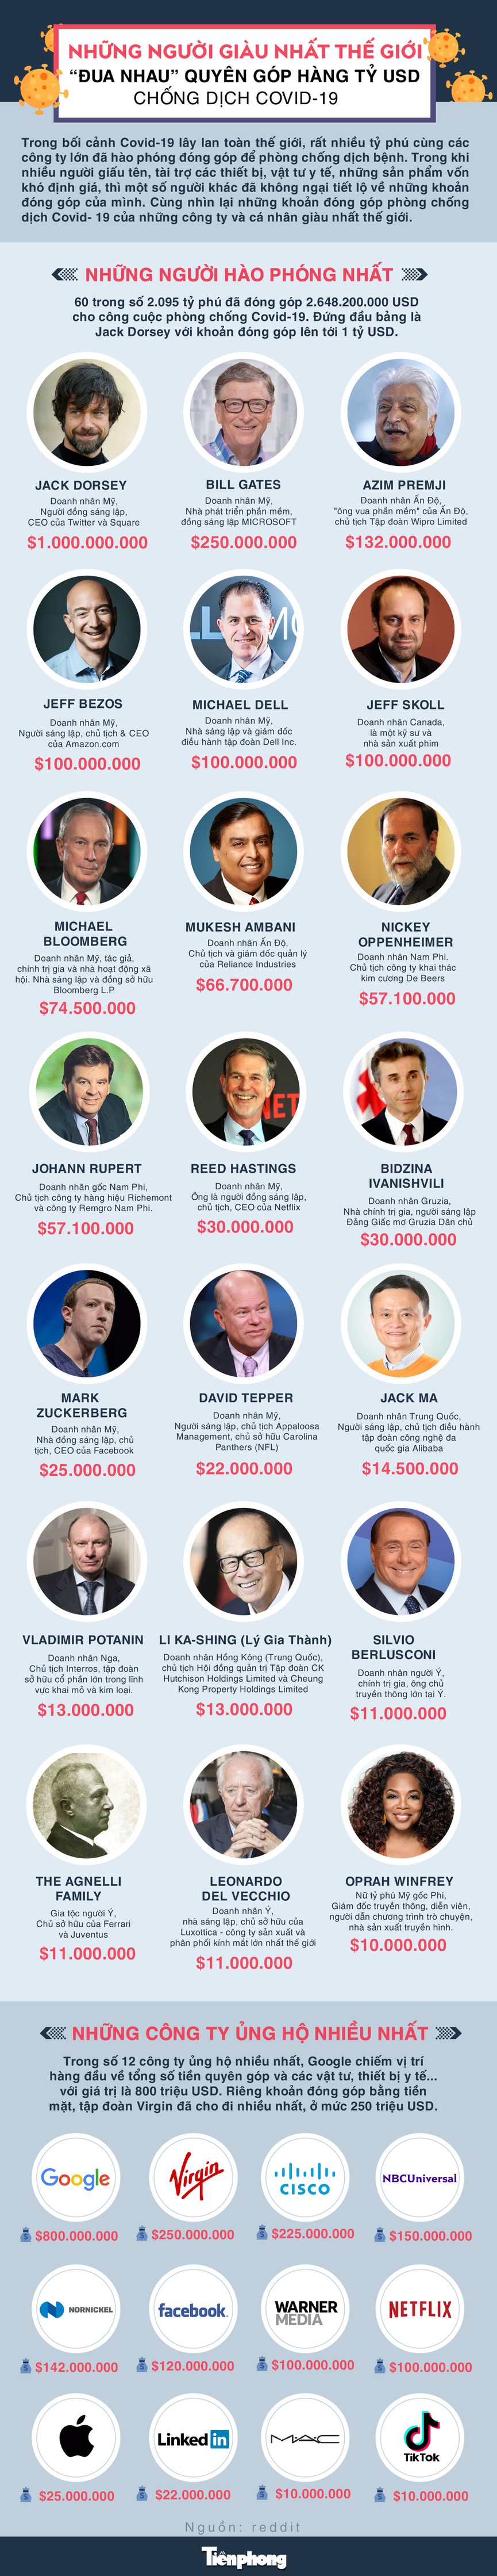 [Infographics] Những người giàu nhất thế giới góp hàng tỷ USD chống dịch Covid-19 - Ảnh 1